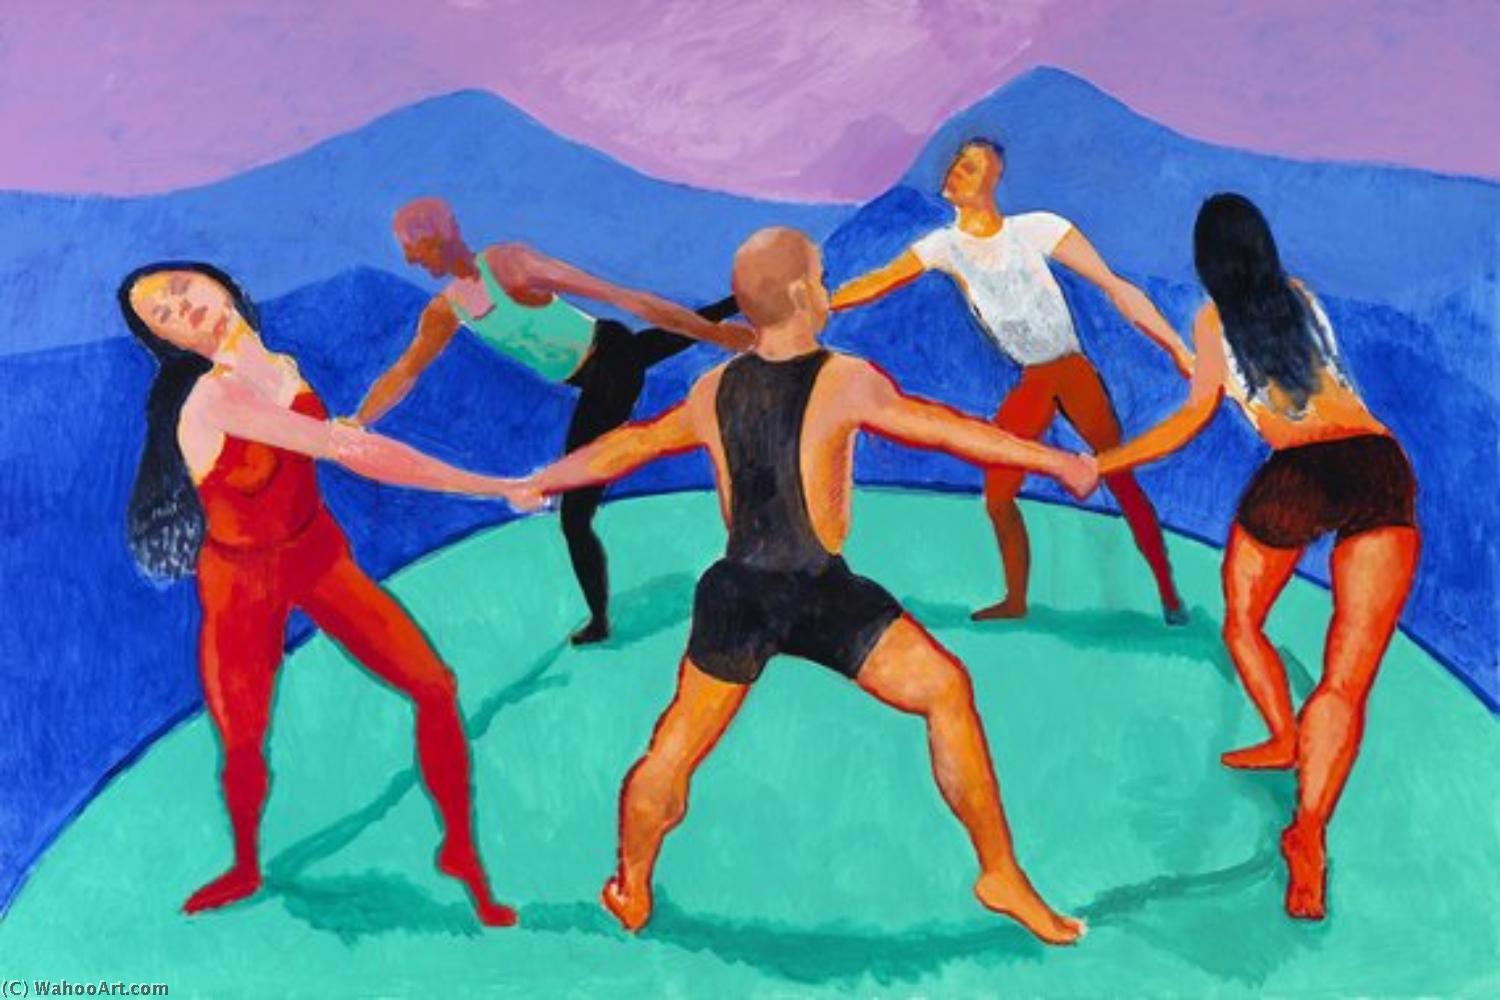 Wikoo.org - موسوعة الفنون الجميلة - اللوحة، العمل الفني David Hockney - The dancers